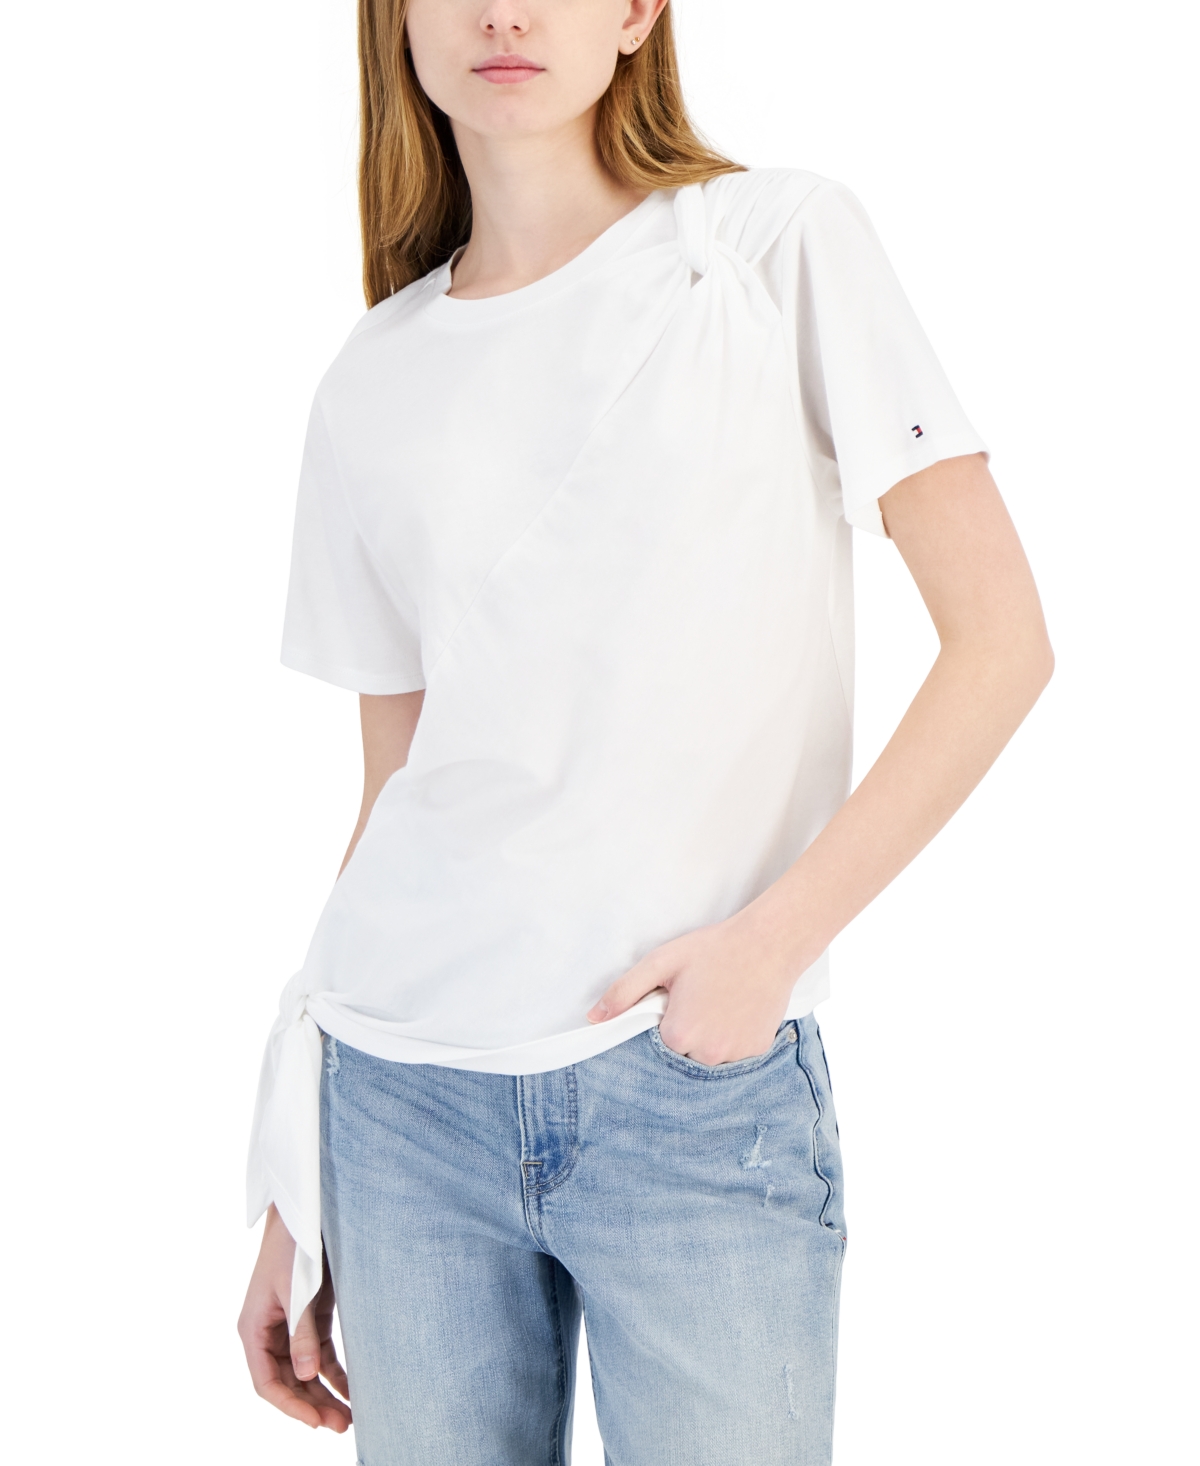 Women's Side-Tie Short-Sleeve Top - White